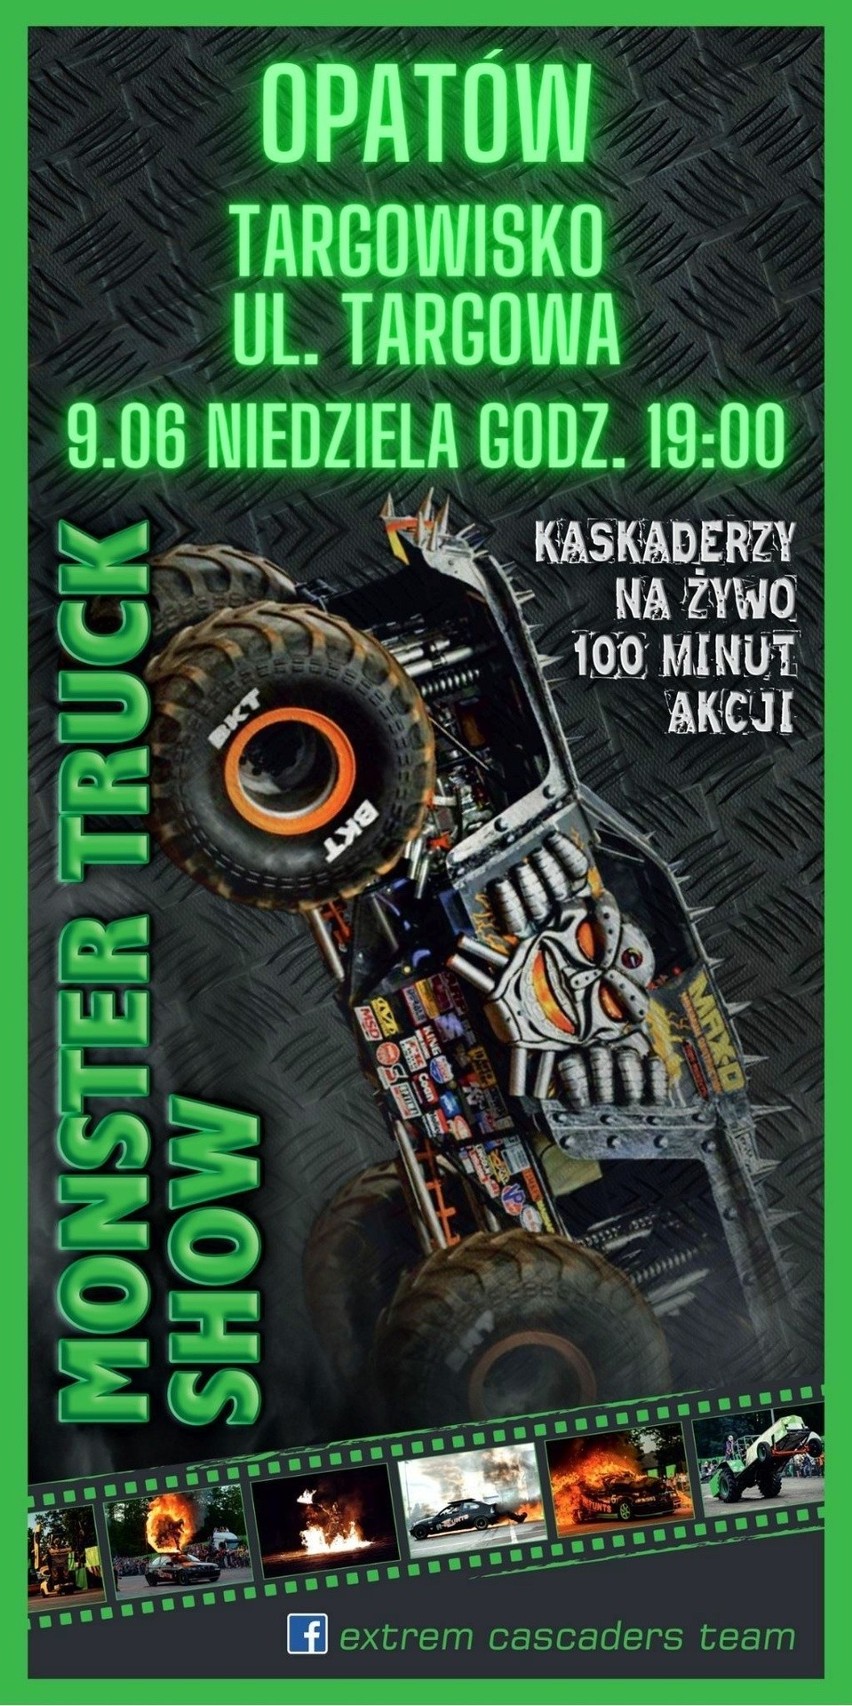 Monster Truck Show w Opatowie. Zobaczymy widowiskowe popisy kaskaderów